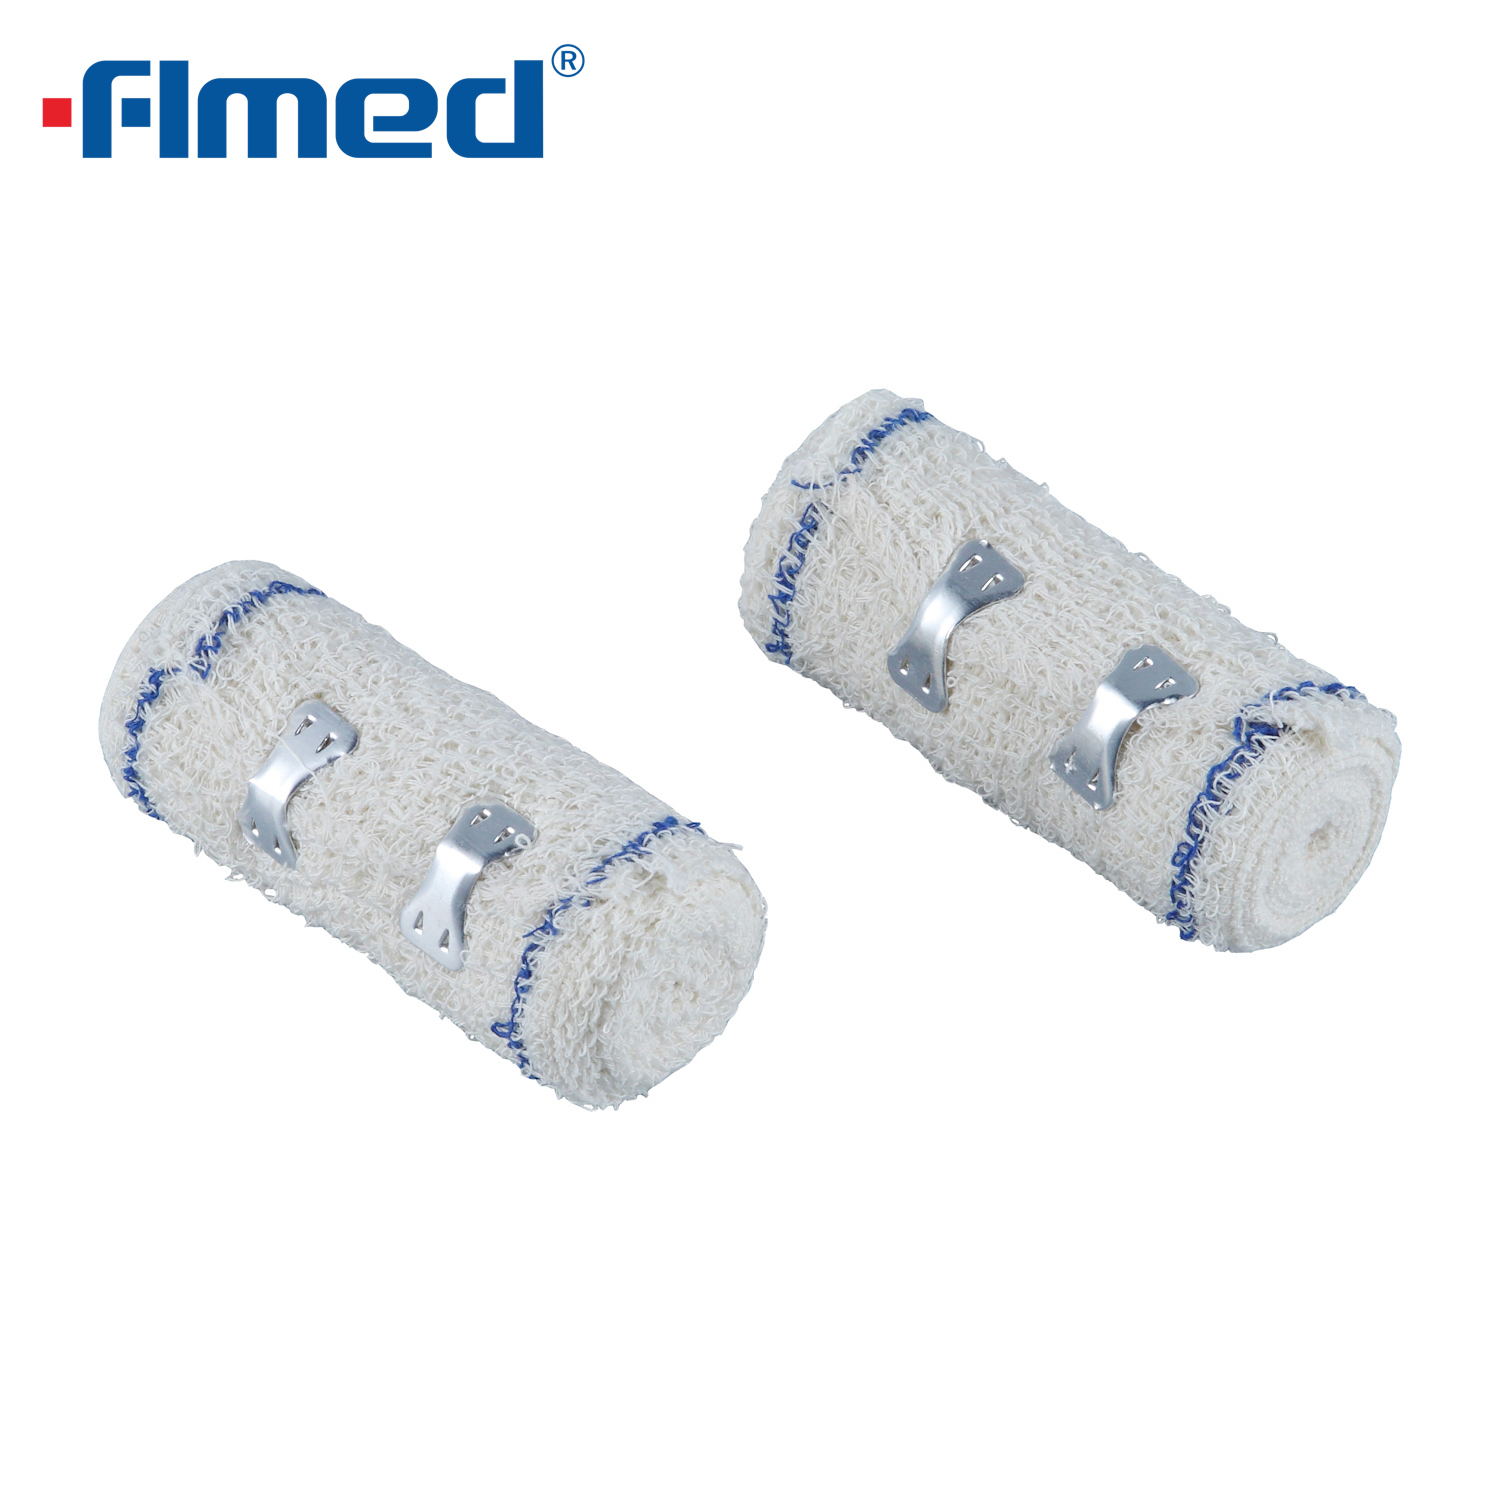 Medical Crepe Bandage Verschillende soorten Elastische crêpe verbanden met clips